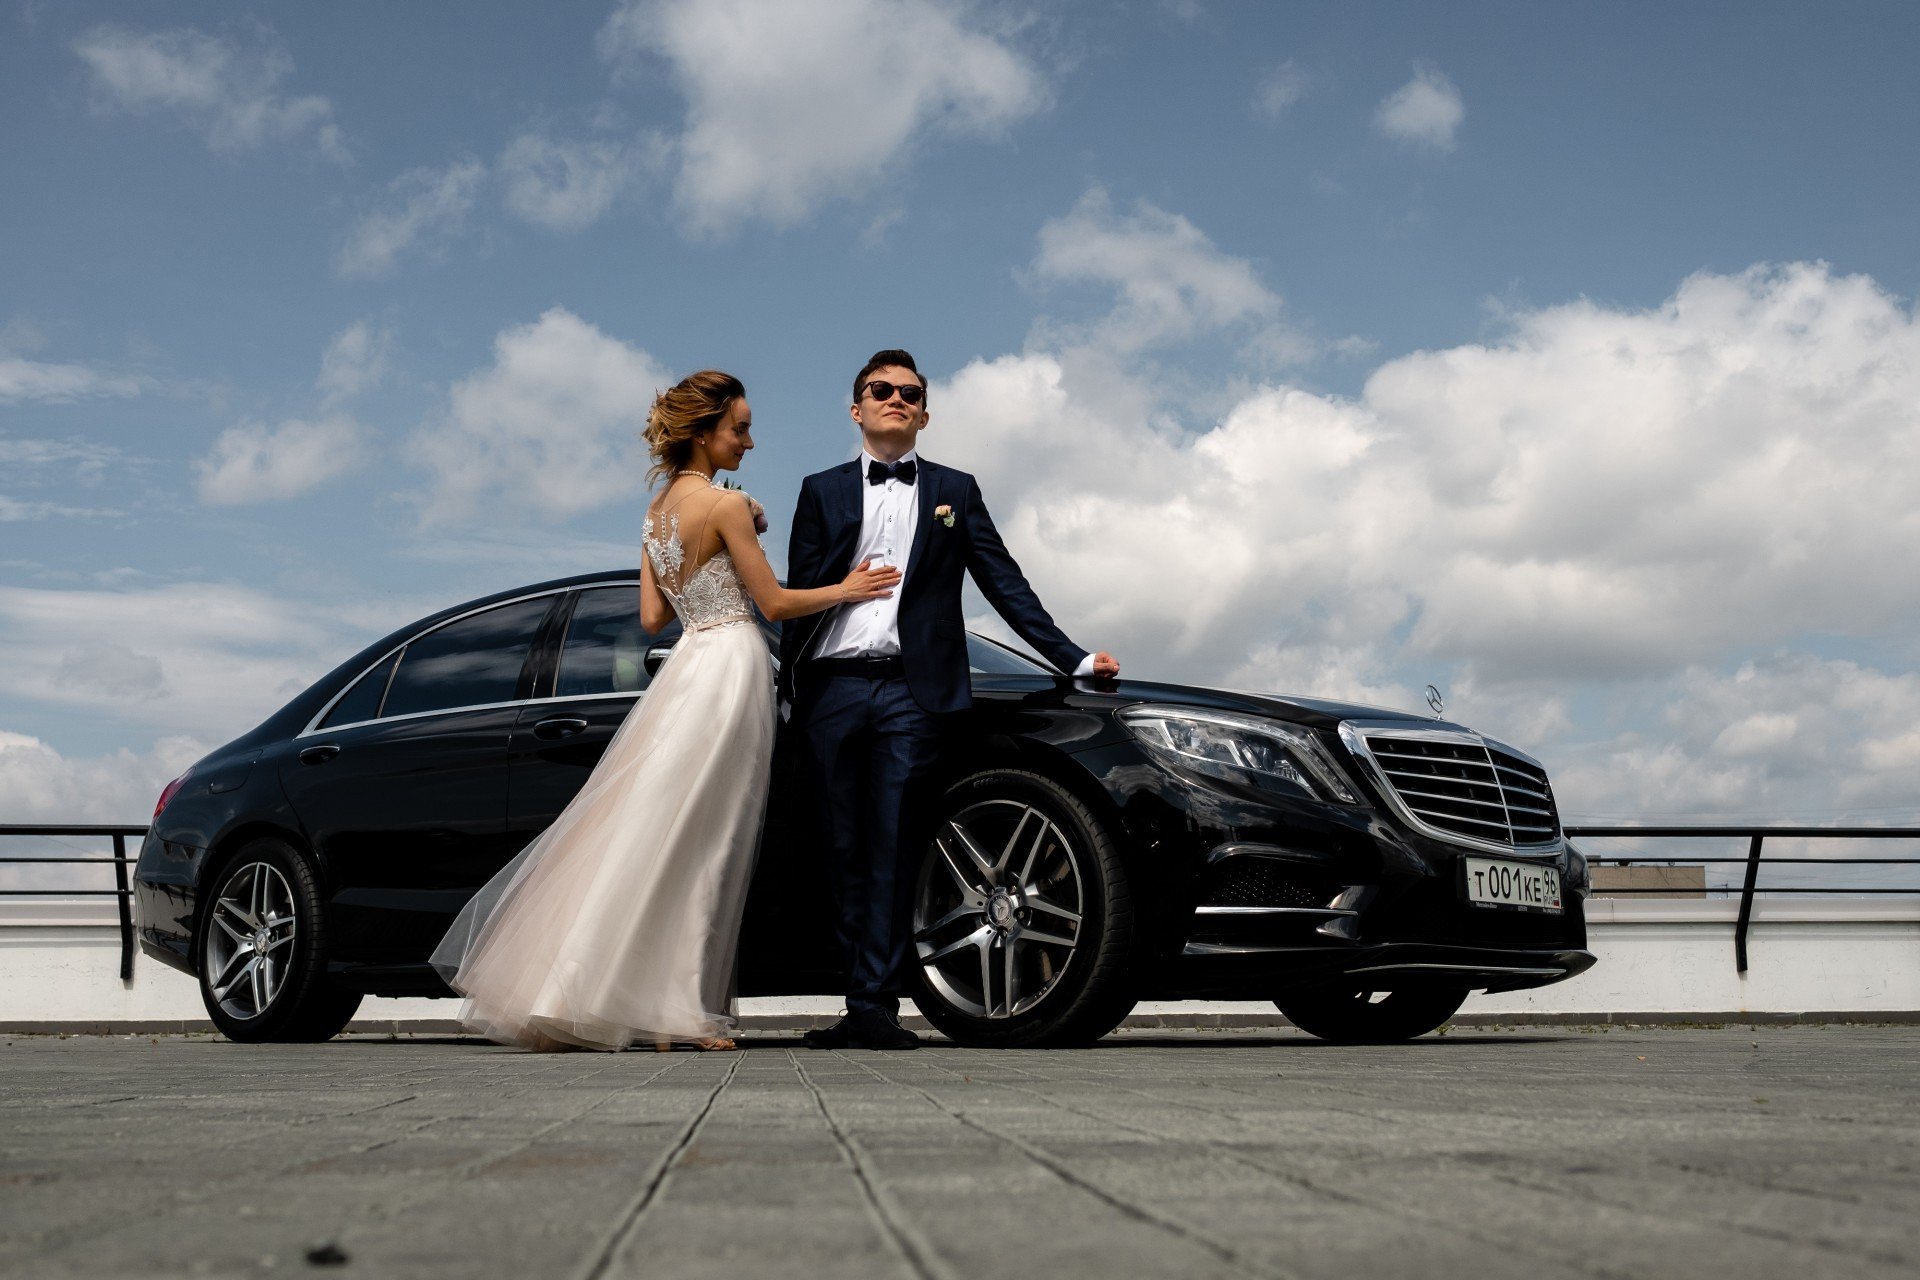 Аренда автомобиля на свадьбу с водителем цена и стоимость, заказать автомобиль для свадьбы